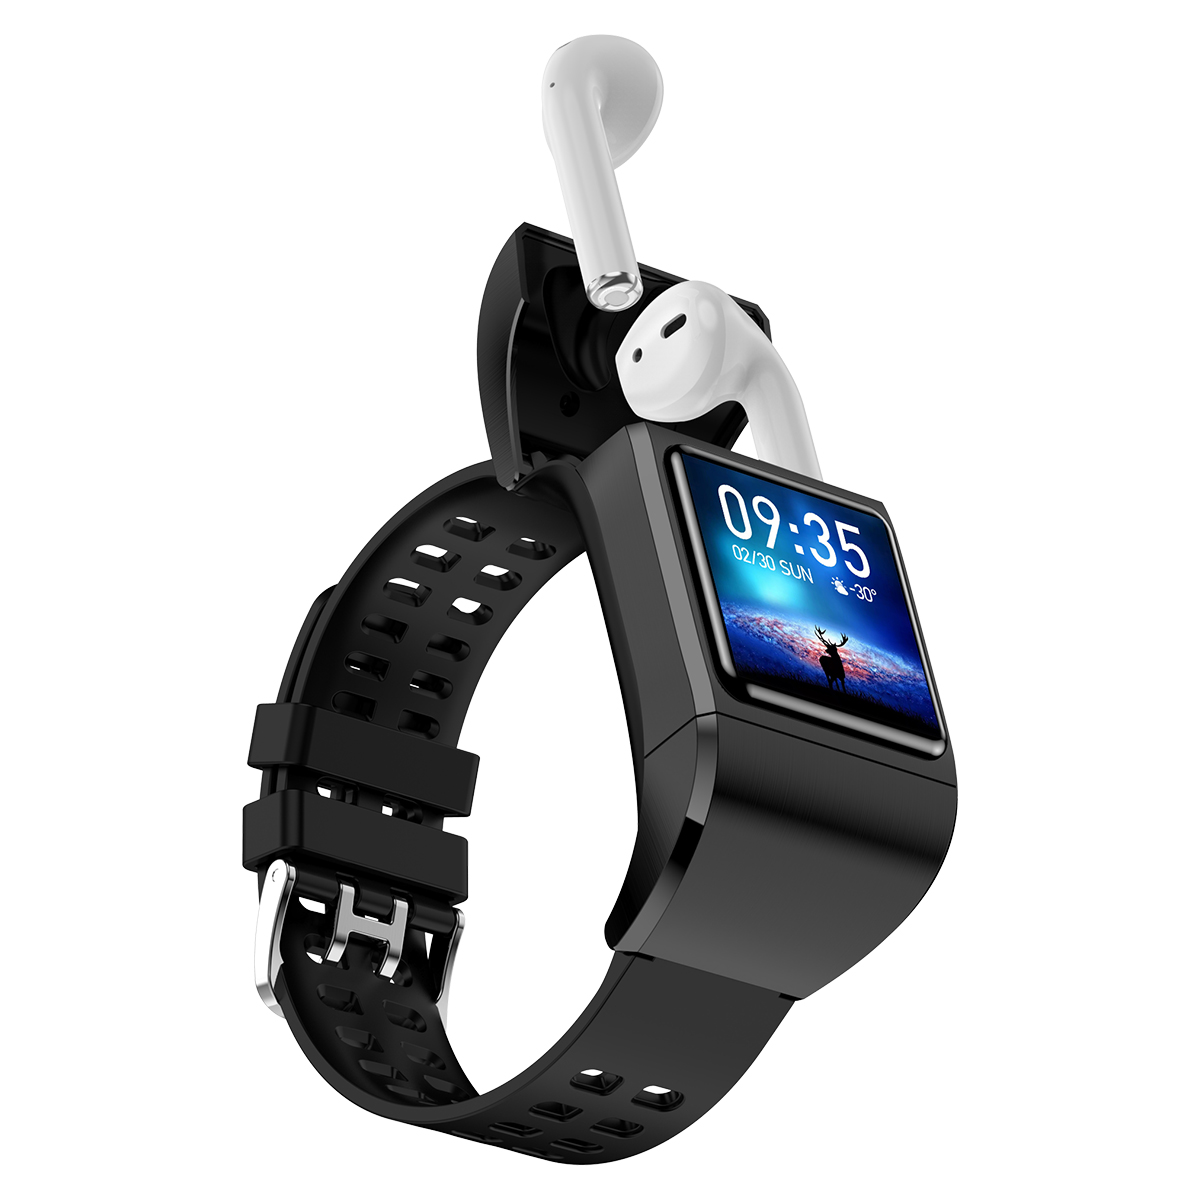 2 em 1 Android Smart Relógio TWS Bluetooth ECG Freqüência cardíaca Pressão sanguínea Tracker de fitness Touch Display iOS Earbuts sem fio com smartwatch Reloj InteLigente